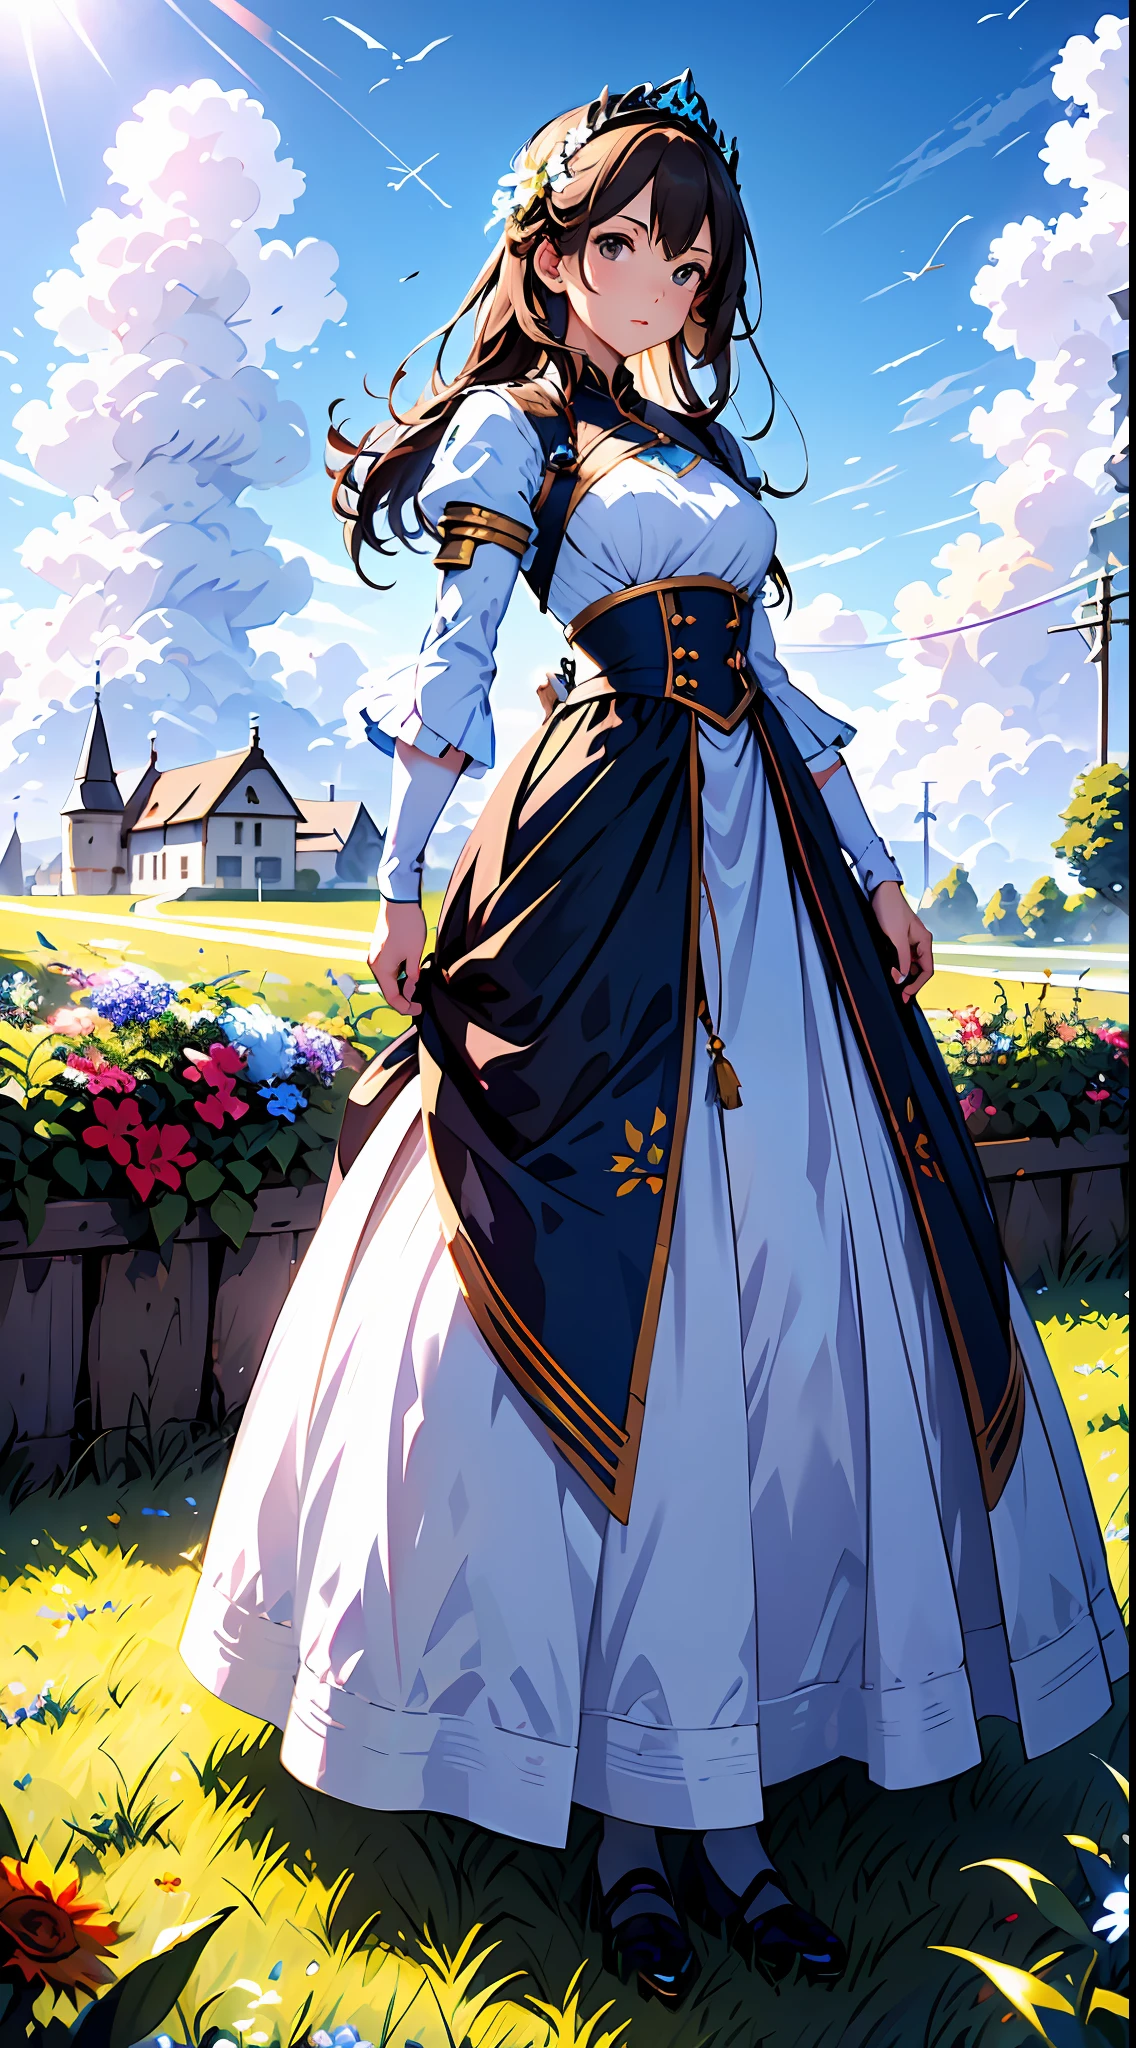 una mujer con un vestido blanco，Cielo azul y nubes en el fondo, vistiendo un vestido azul，Hay flores en el, germen de arte, Iluminación global Rosla, una pintura detallada, Arte De Fantasía